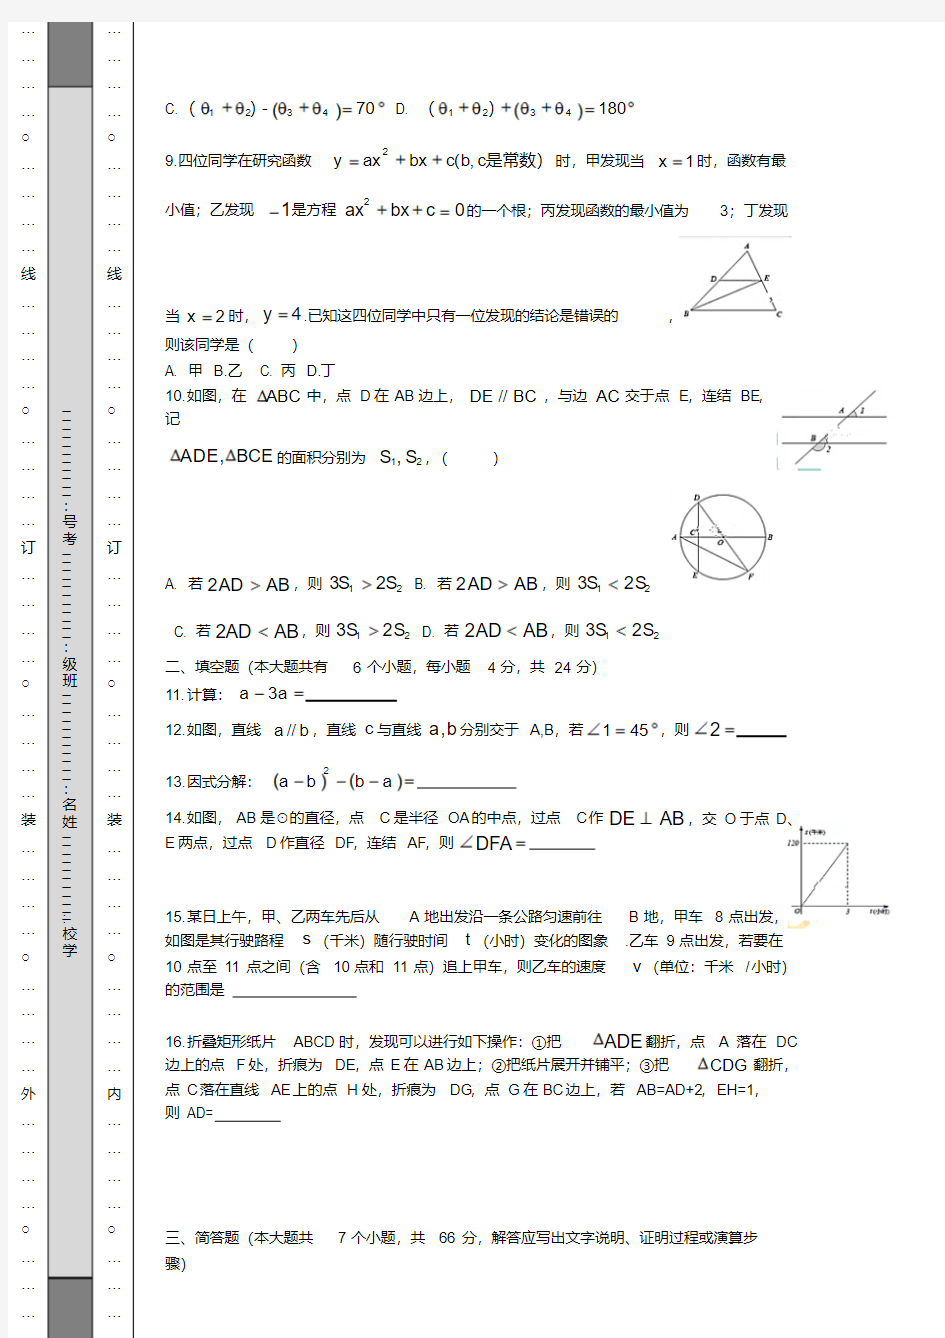 2018年杭州市中考数学试题